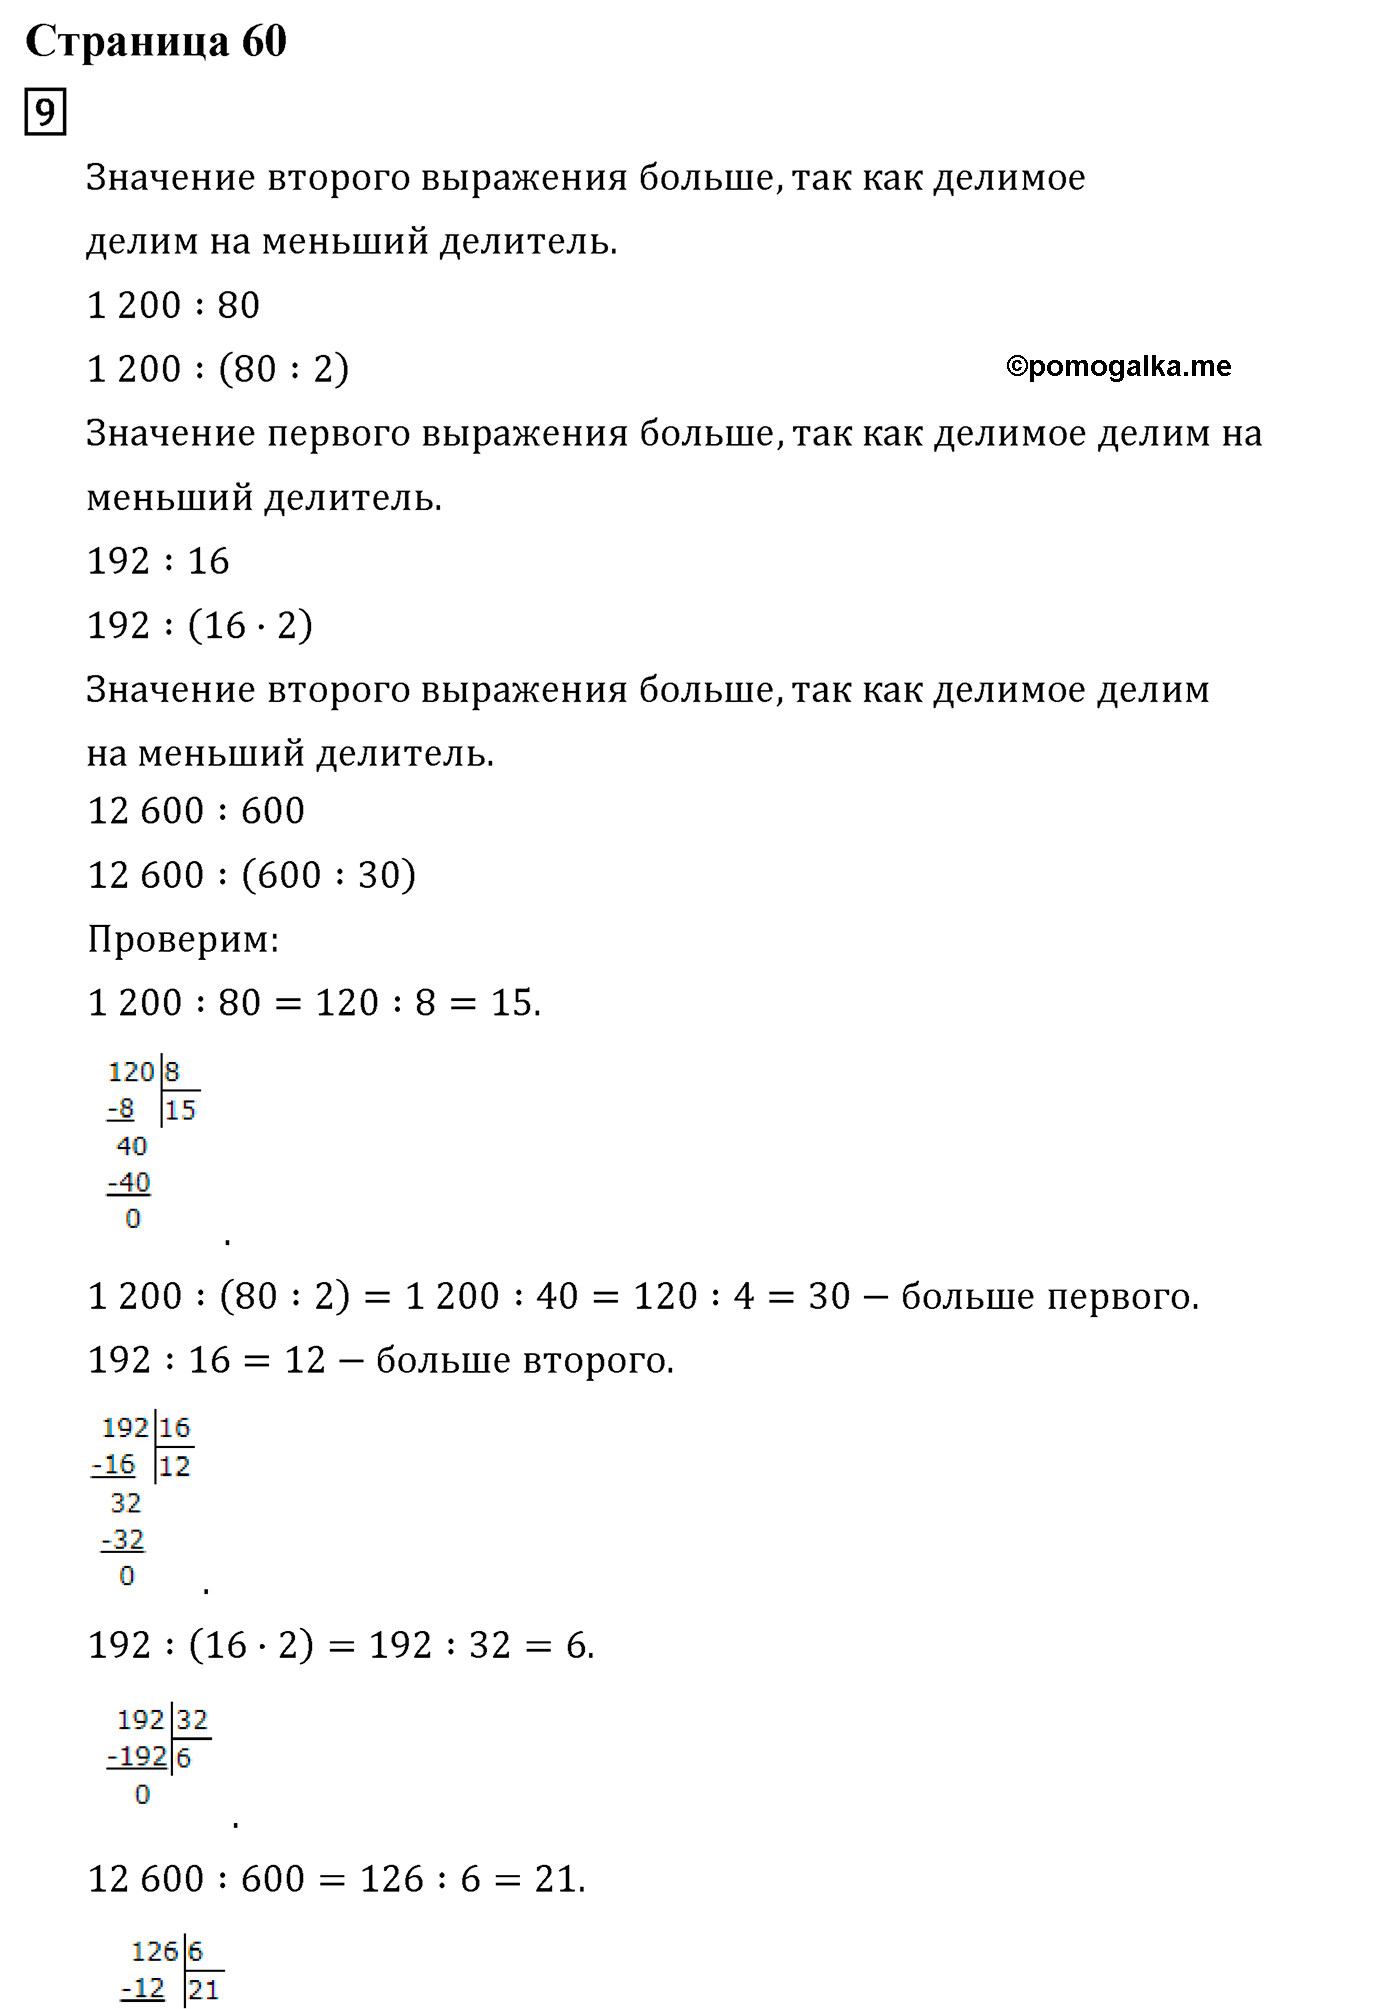 Страница №60 Часть 2 математика 4 класс Дорофеев